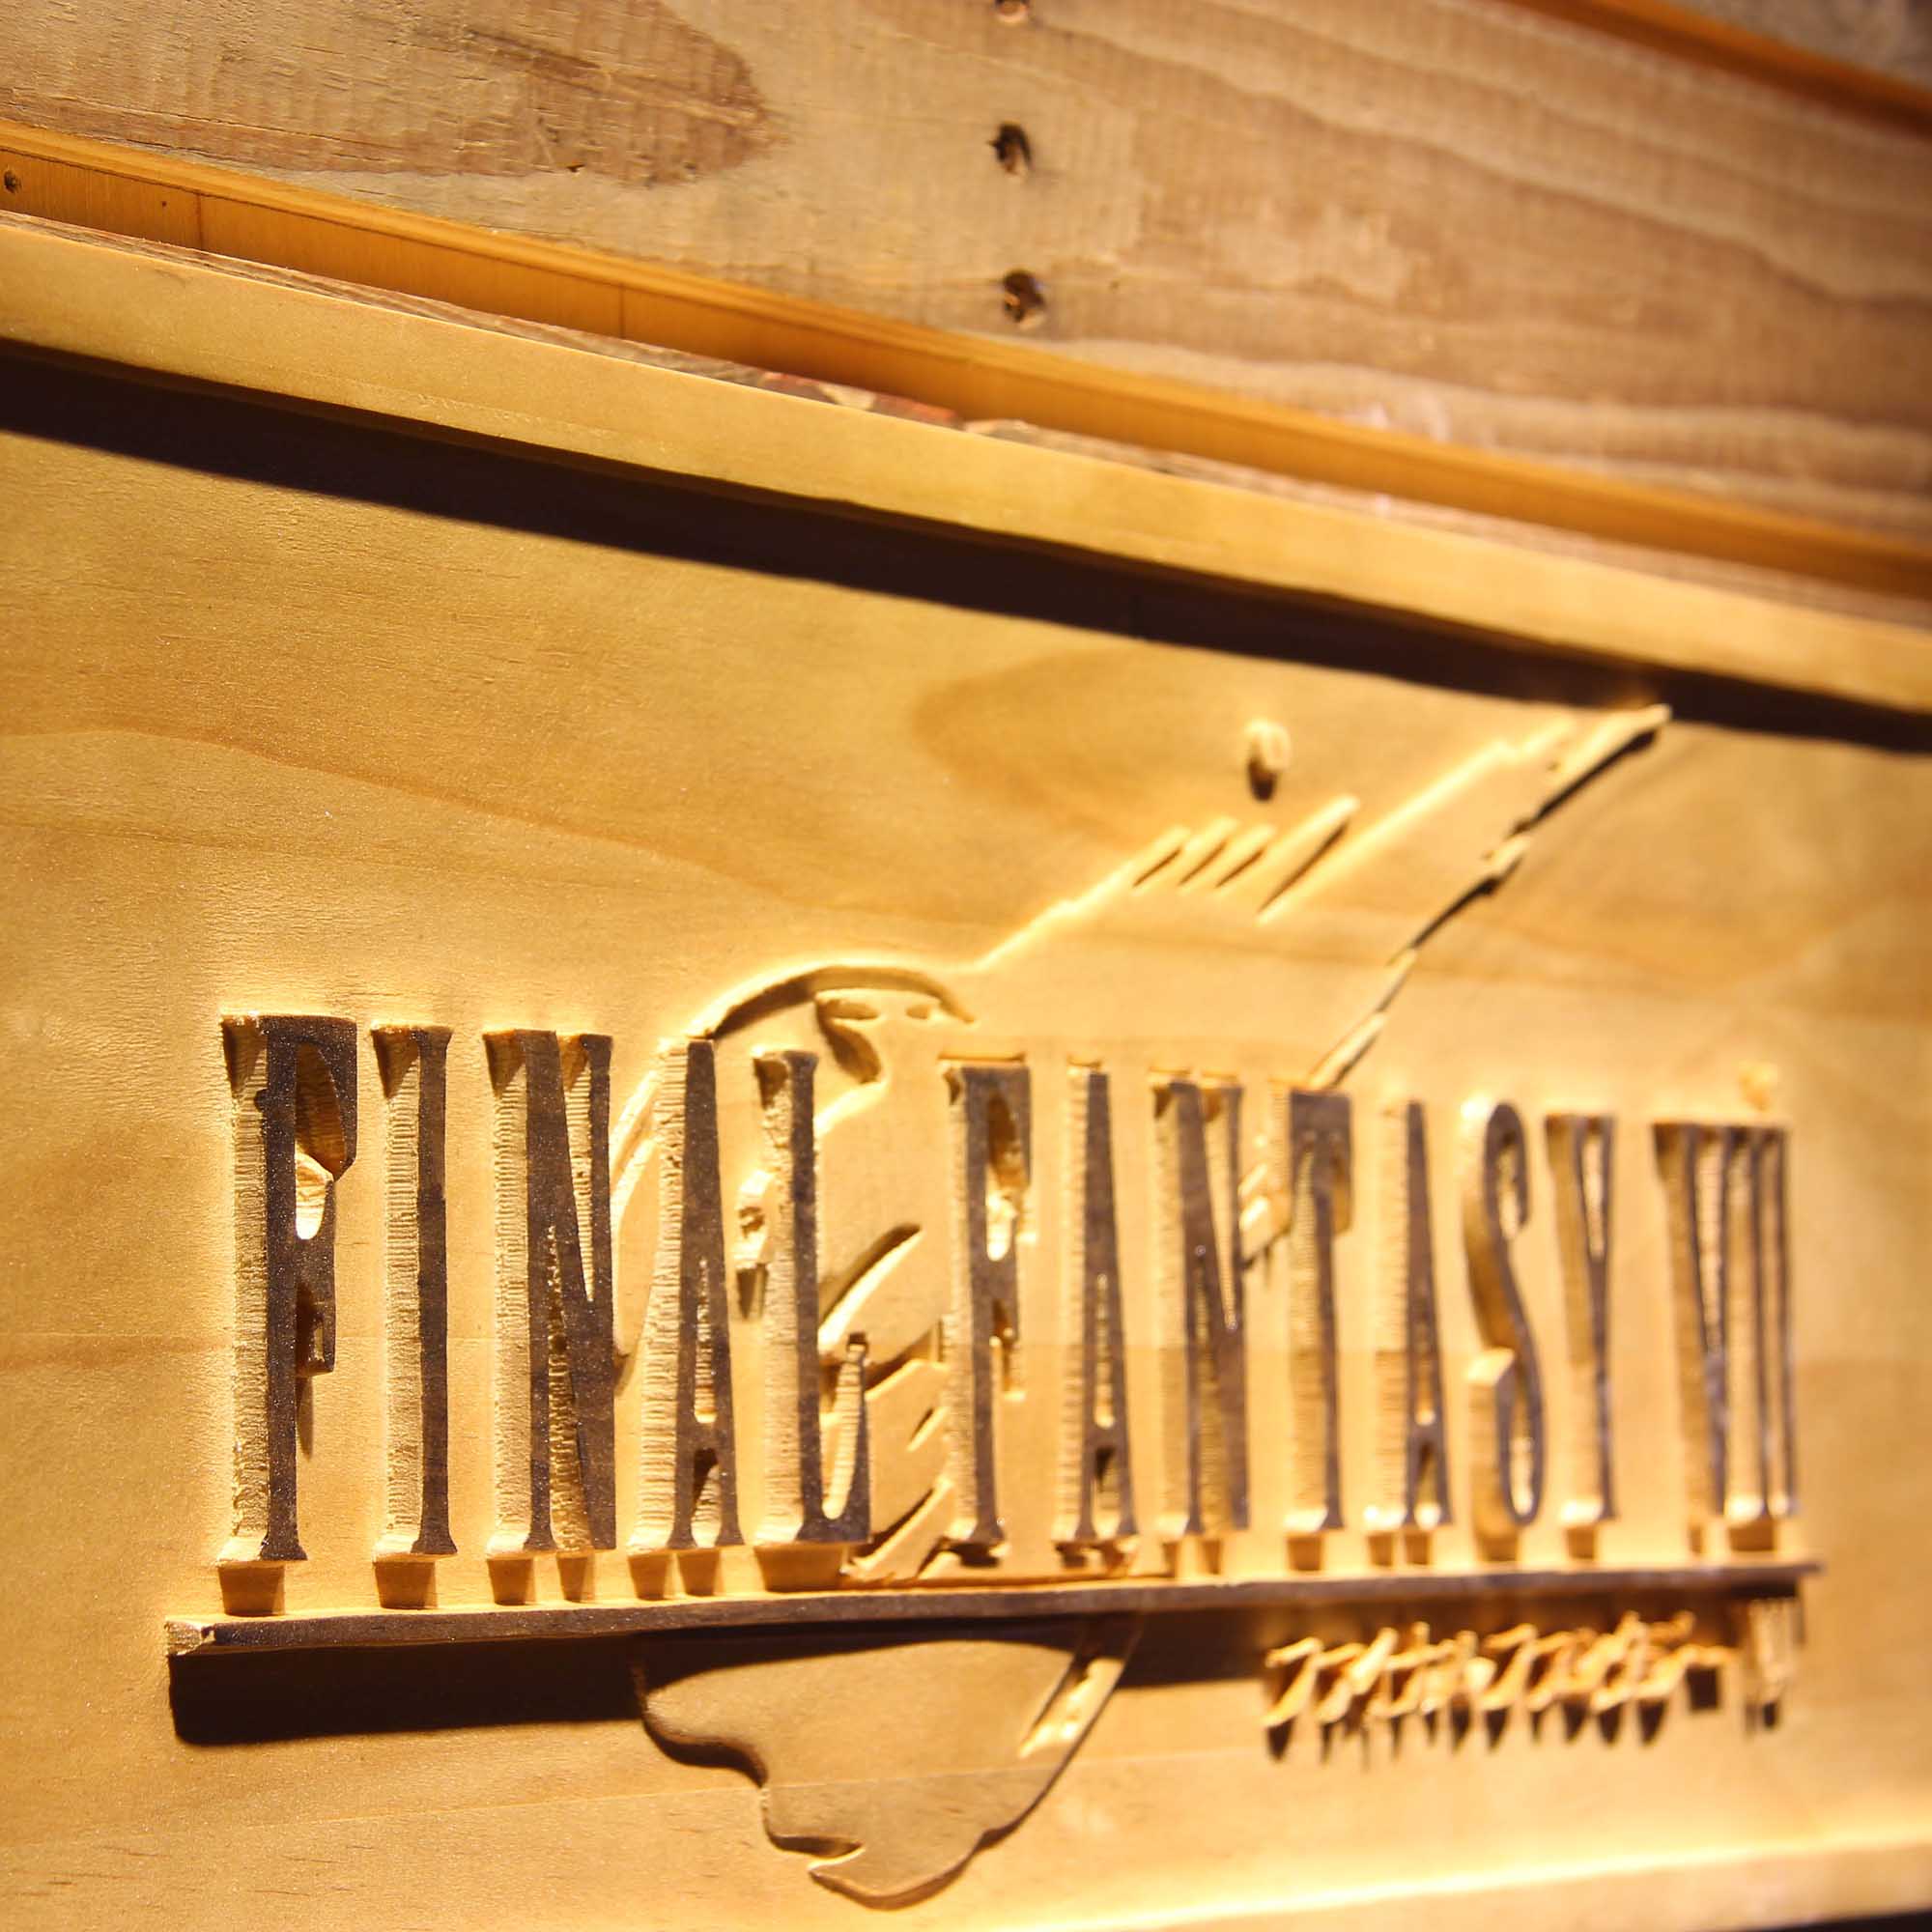 Final Fantasy VII 3D Wooden Engrave Sign